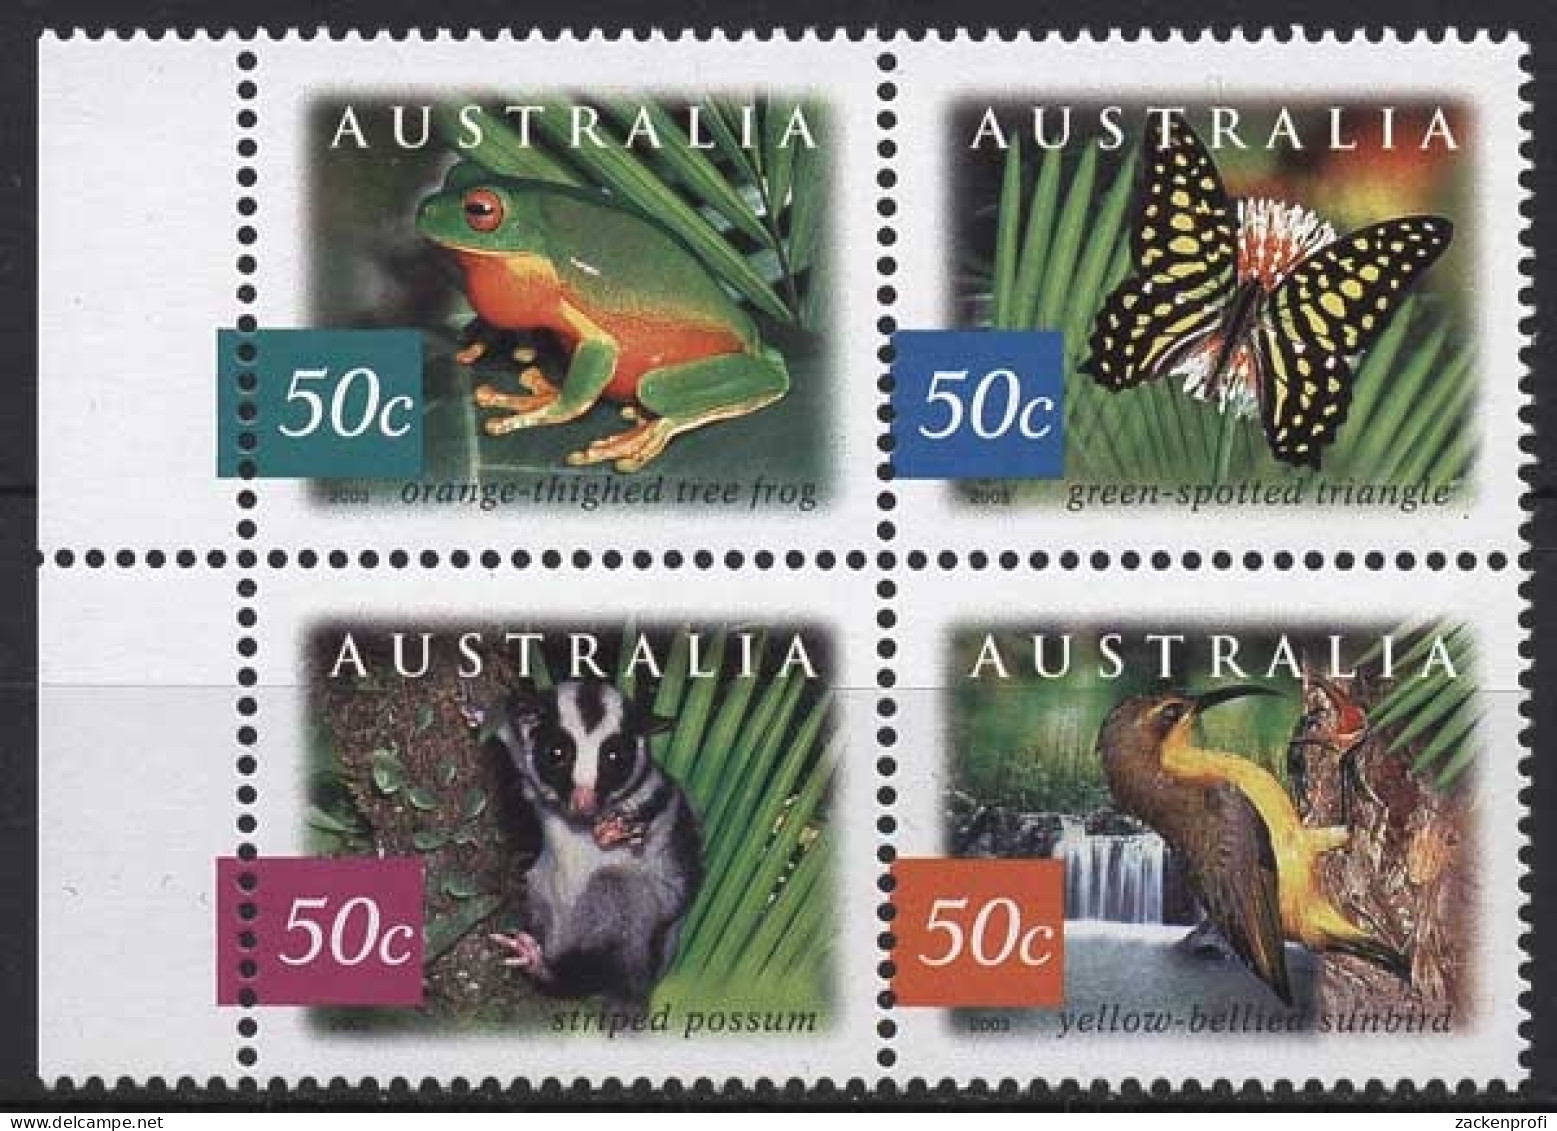 Australien 2003 Regenwald Tiere Frosch Schmetterling 2237/40 ZD Postfrisch - Neufs